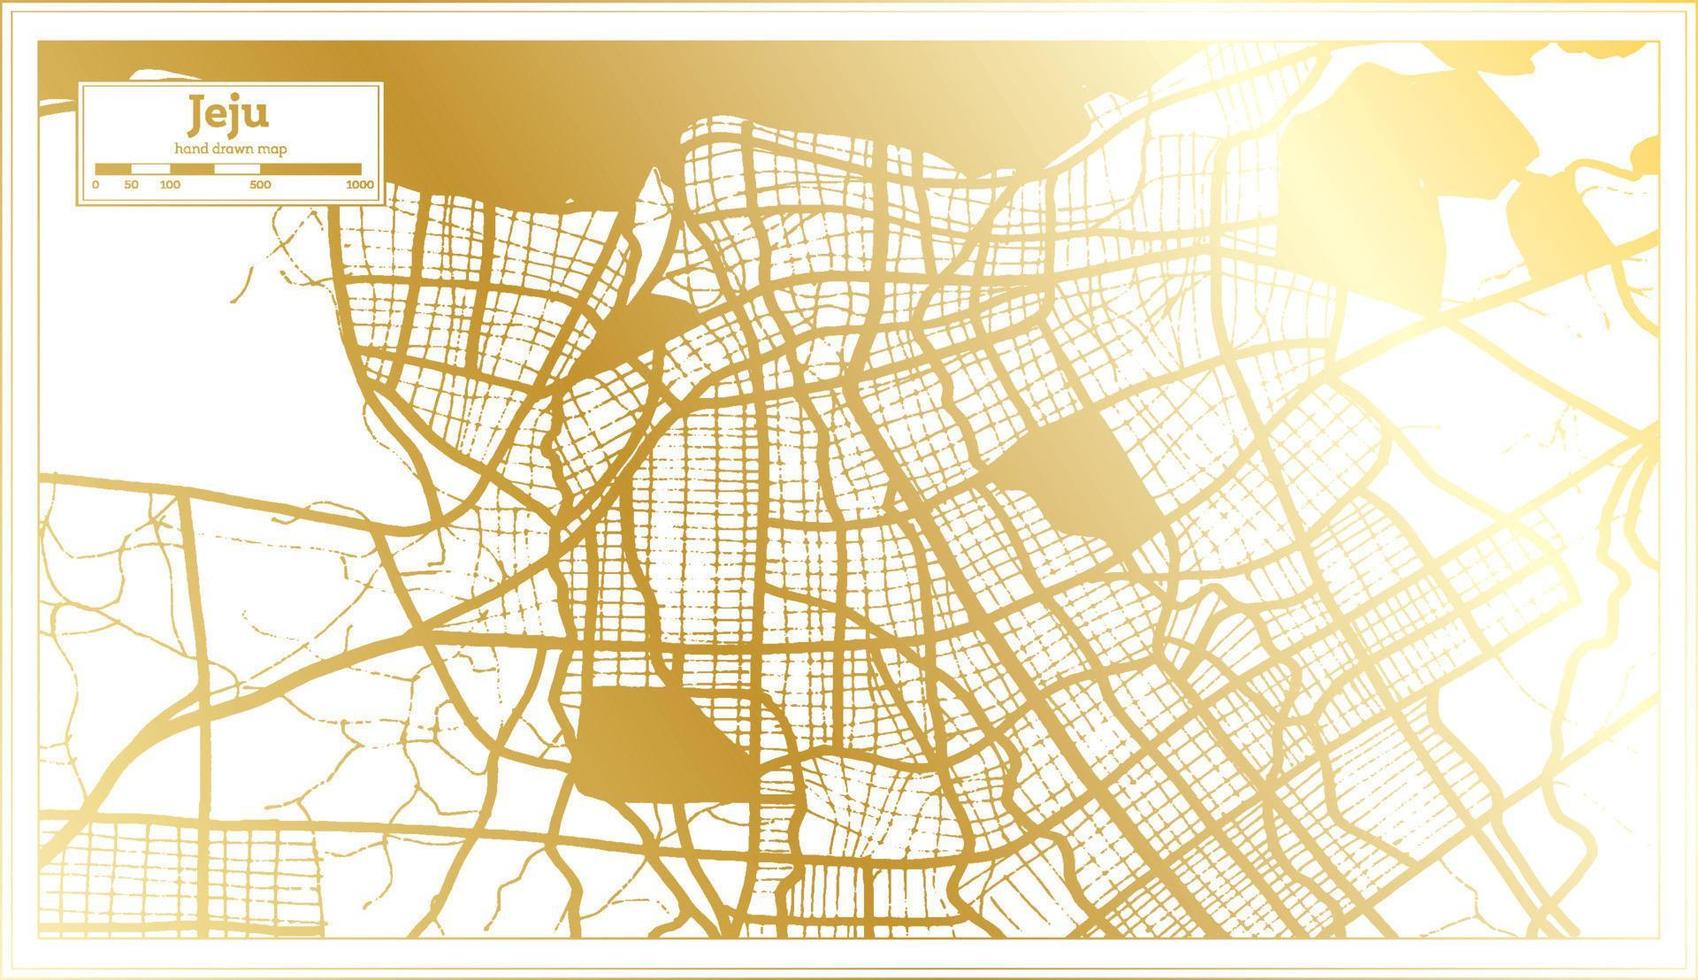 mapa da cidade de jeju coreia do sul em estilo retrô na cor dourada. mapa de contorno. vetor